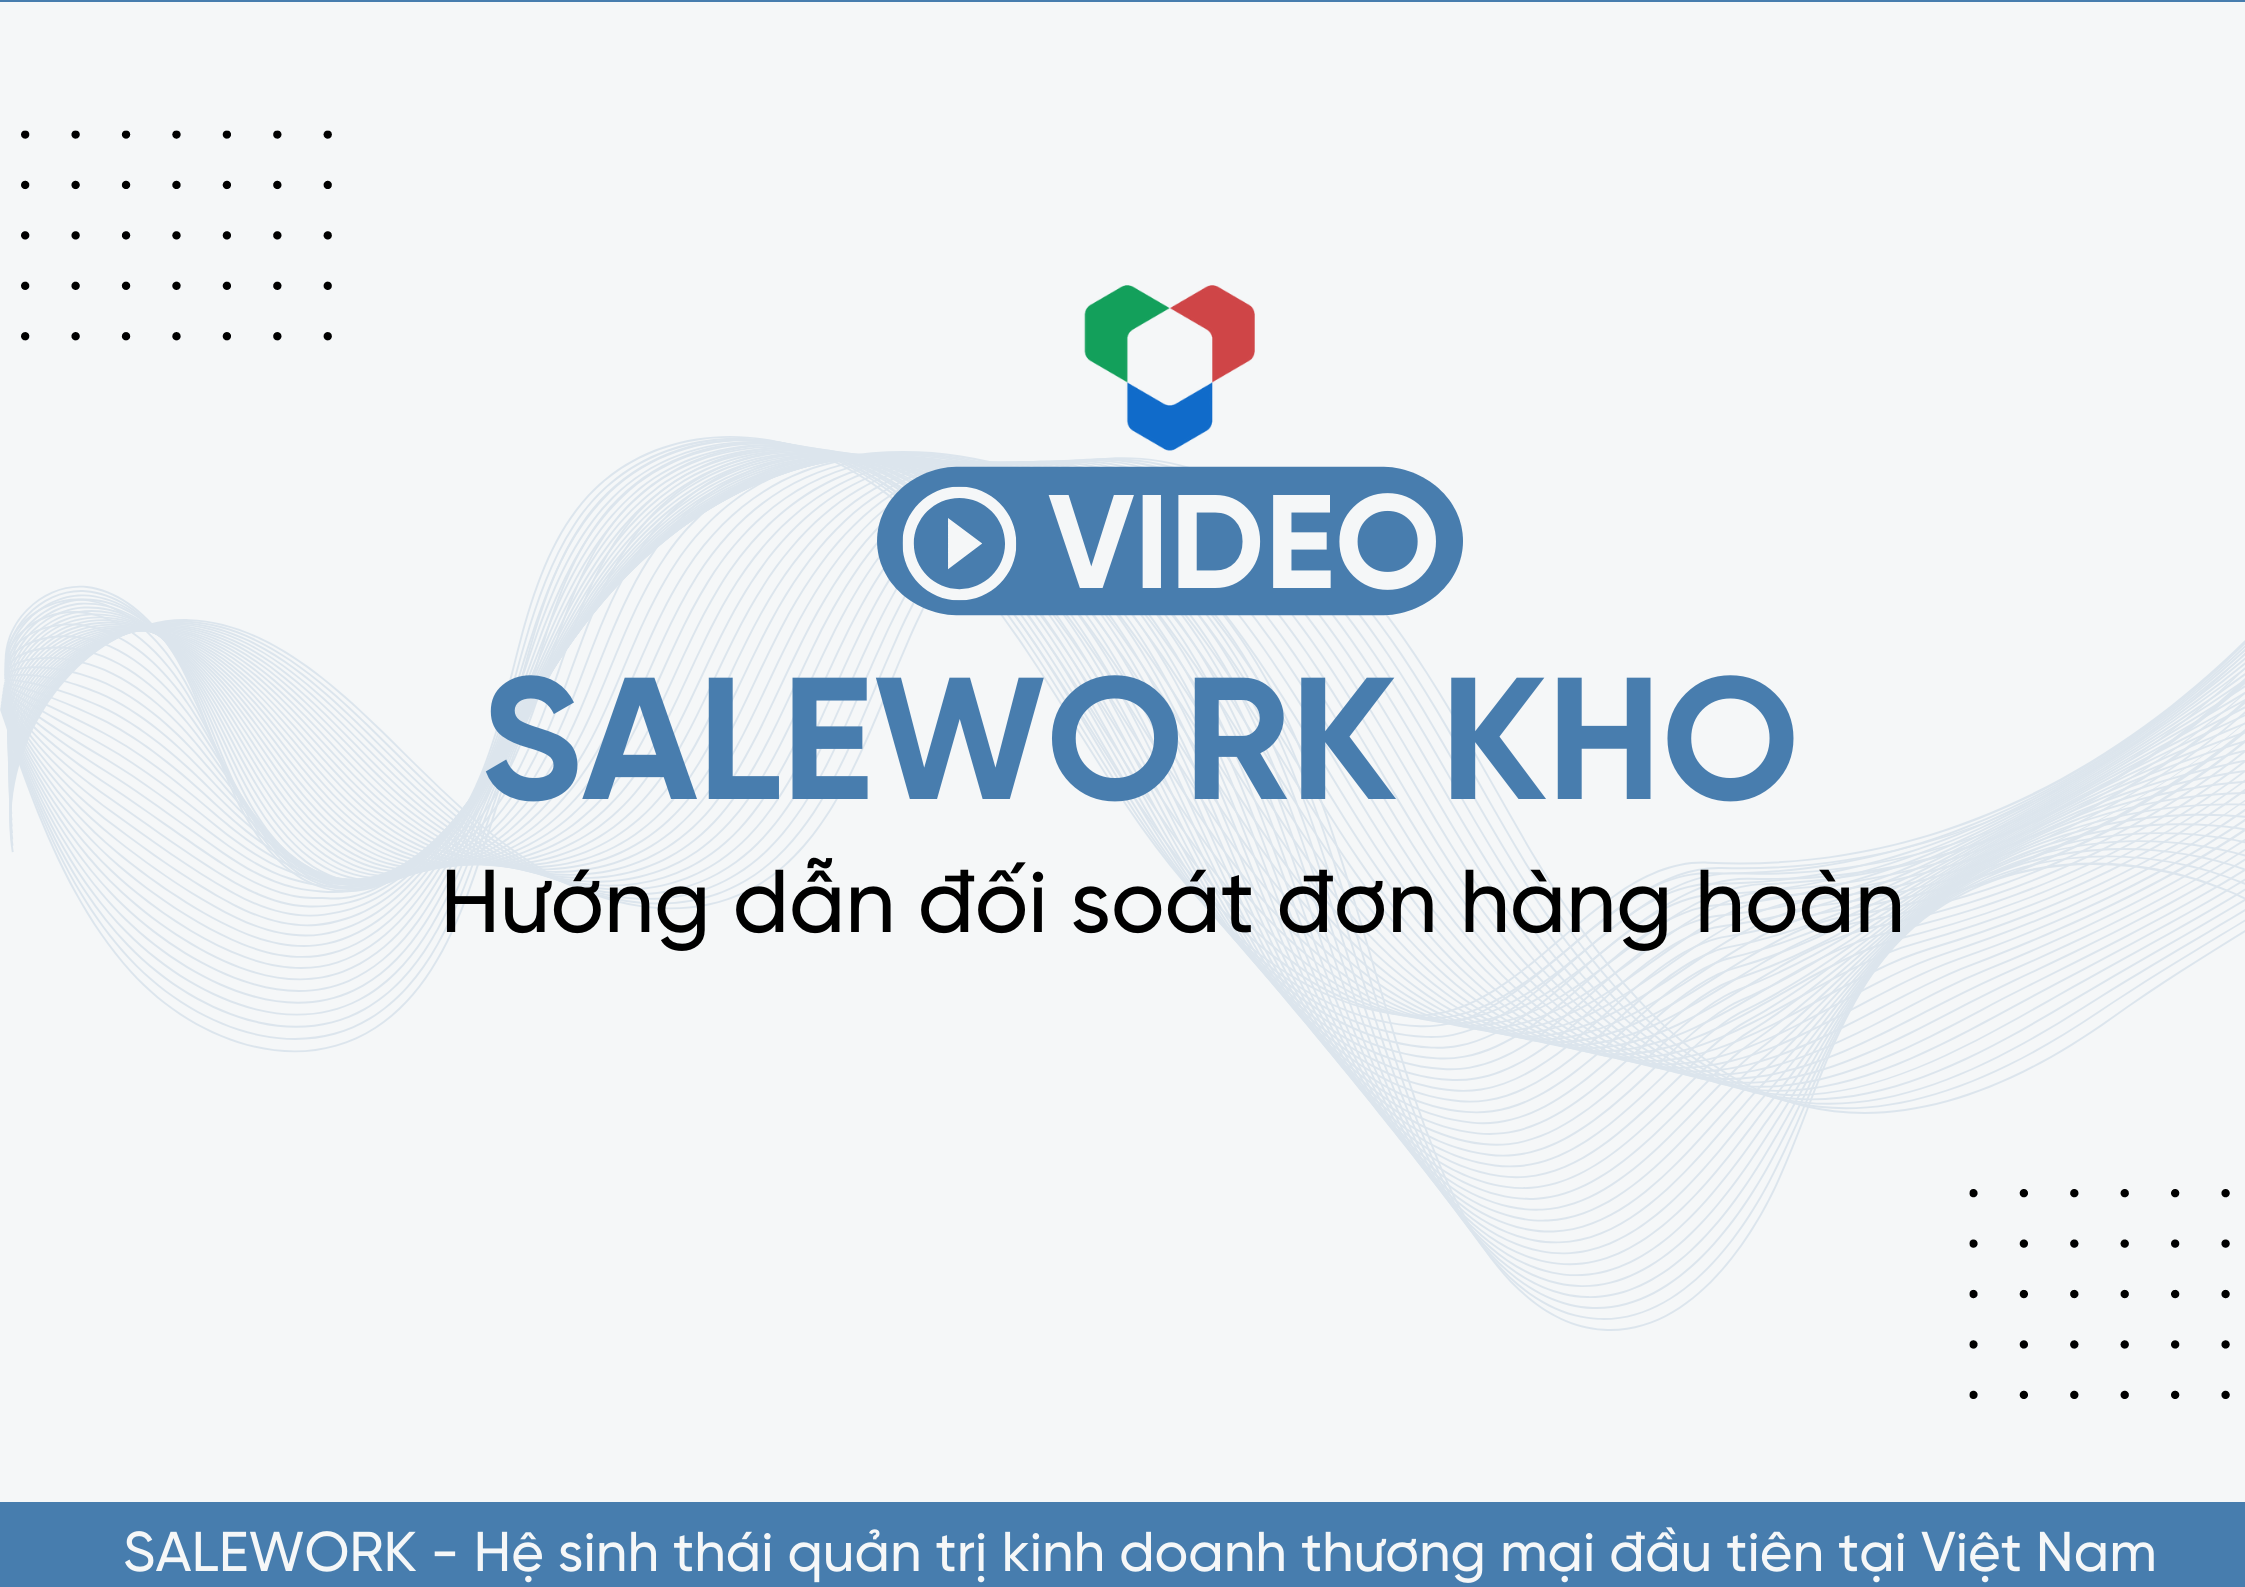 [VIDEO] Hướng dẫn đối soát đơn hàng hoàn tại Salework Kho - 15